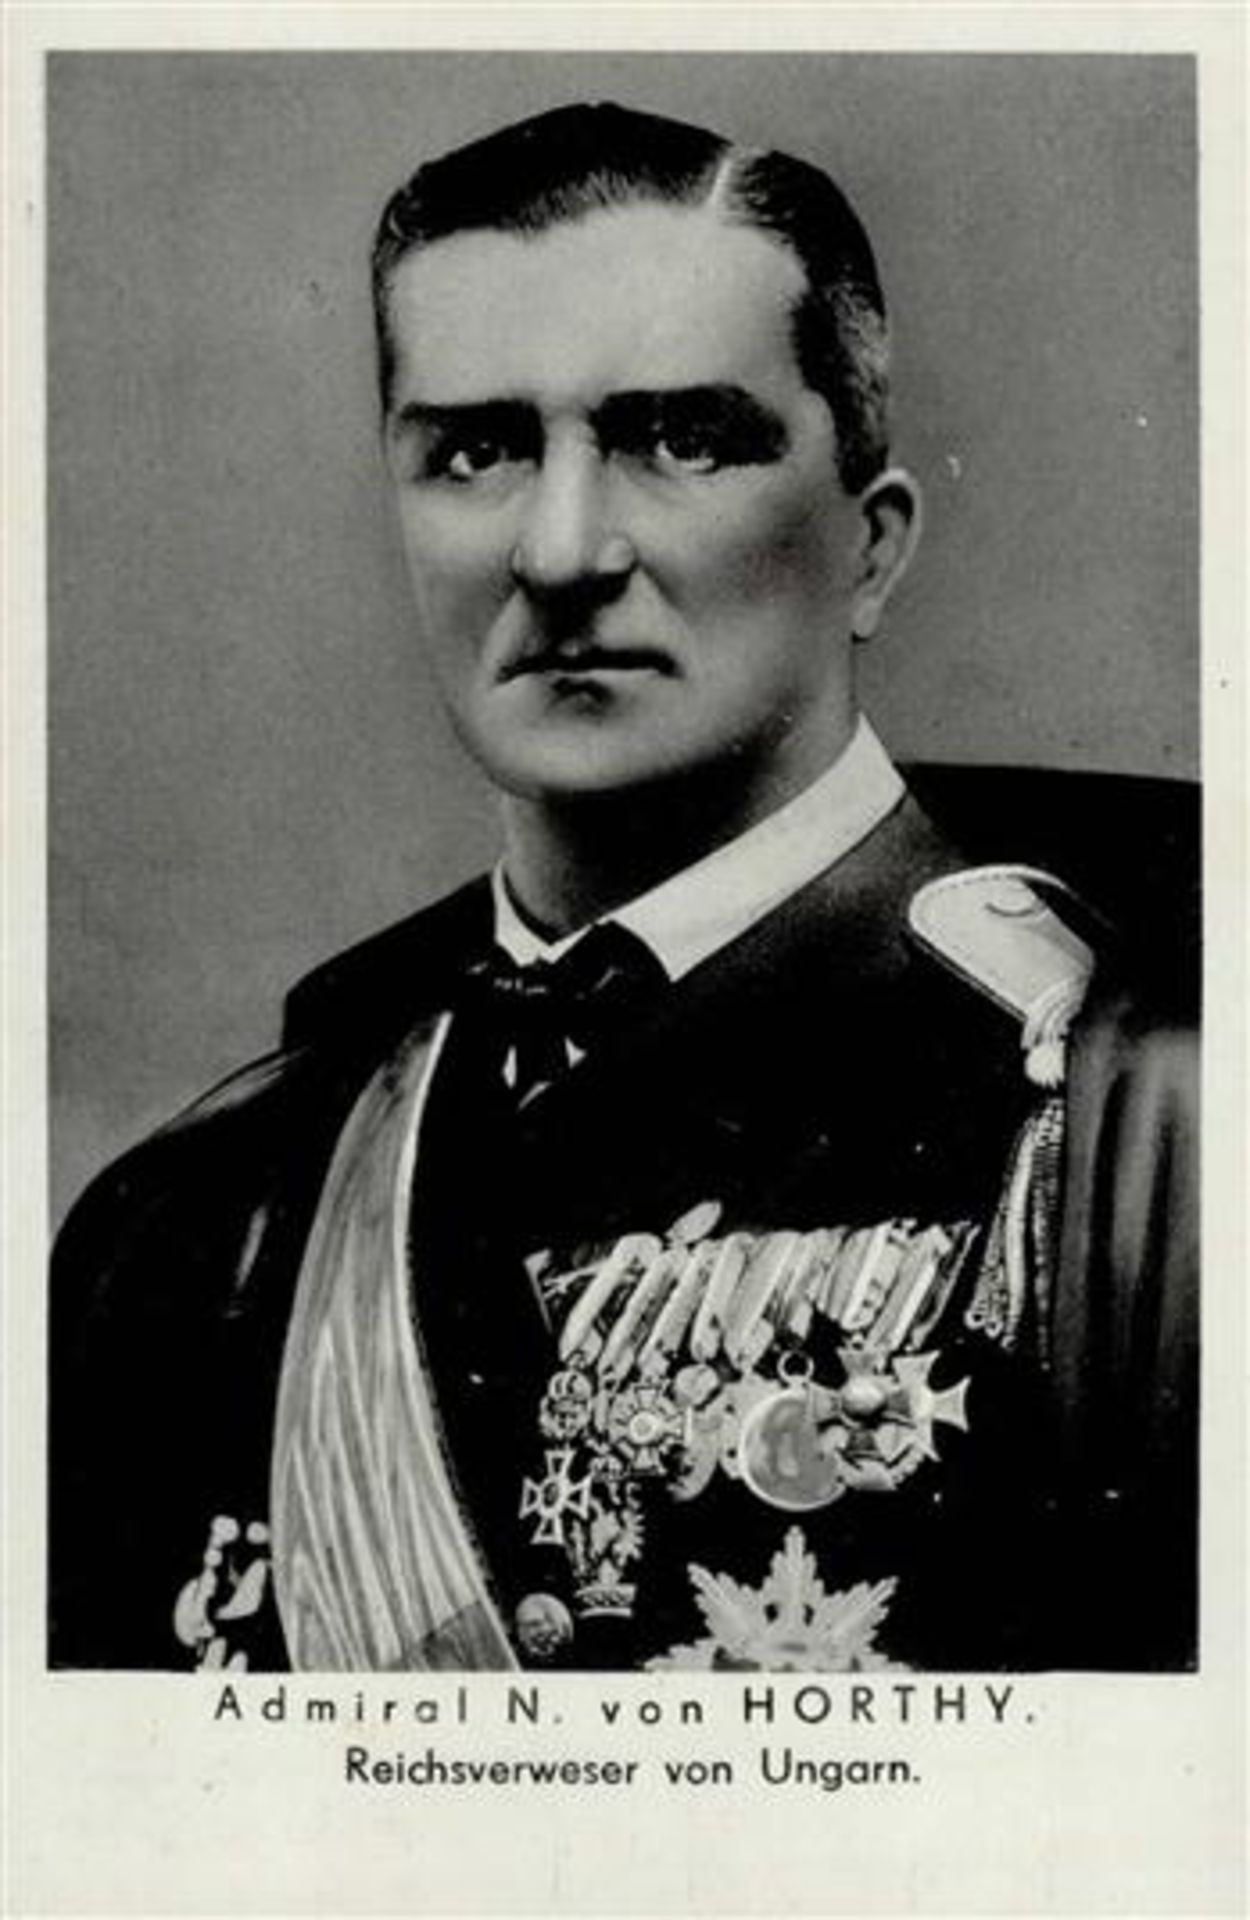 WK II Admiral N. von Horthy Reichsverweser von Ungarn S-o I-II